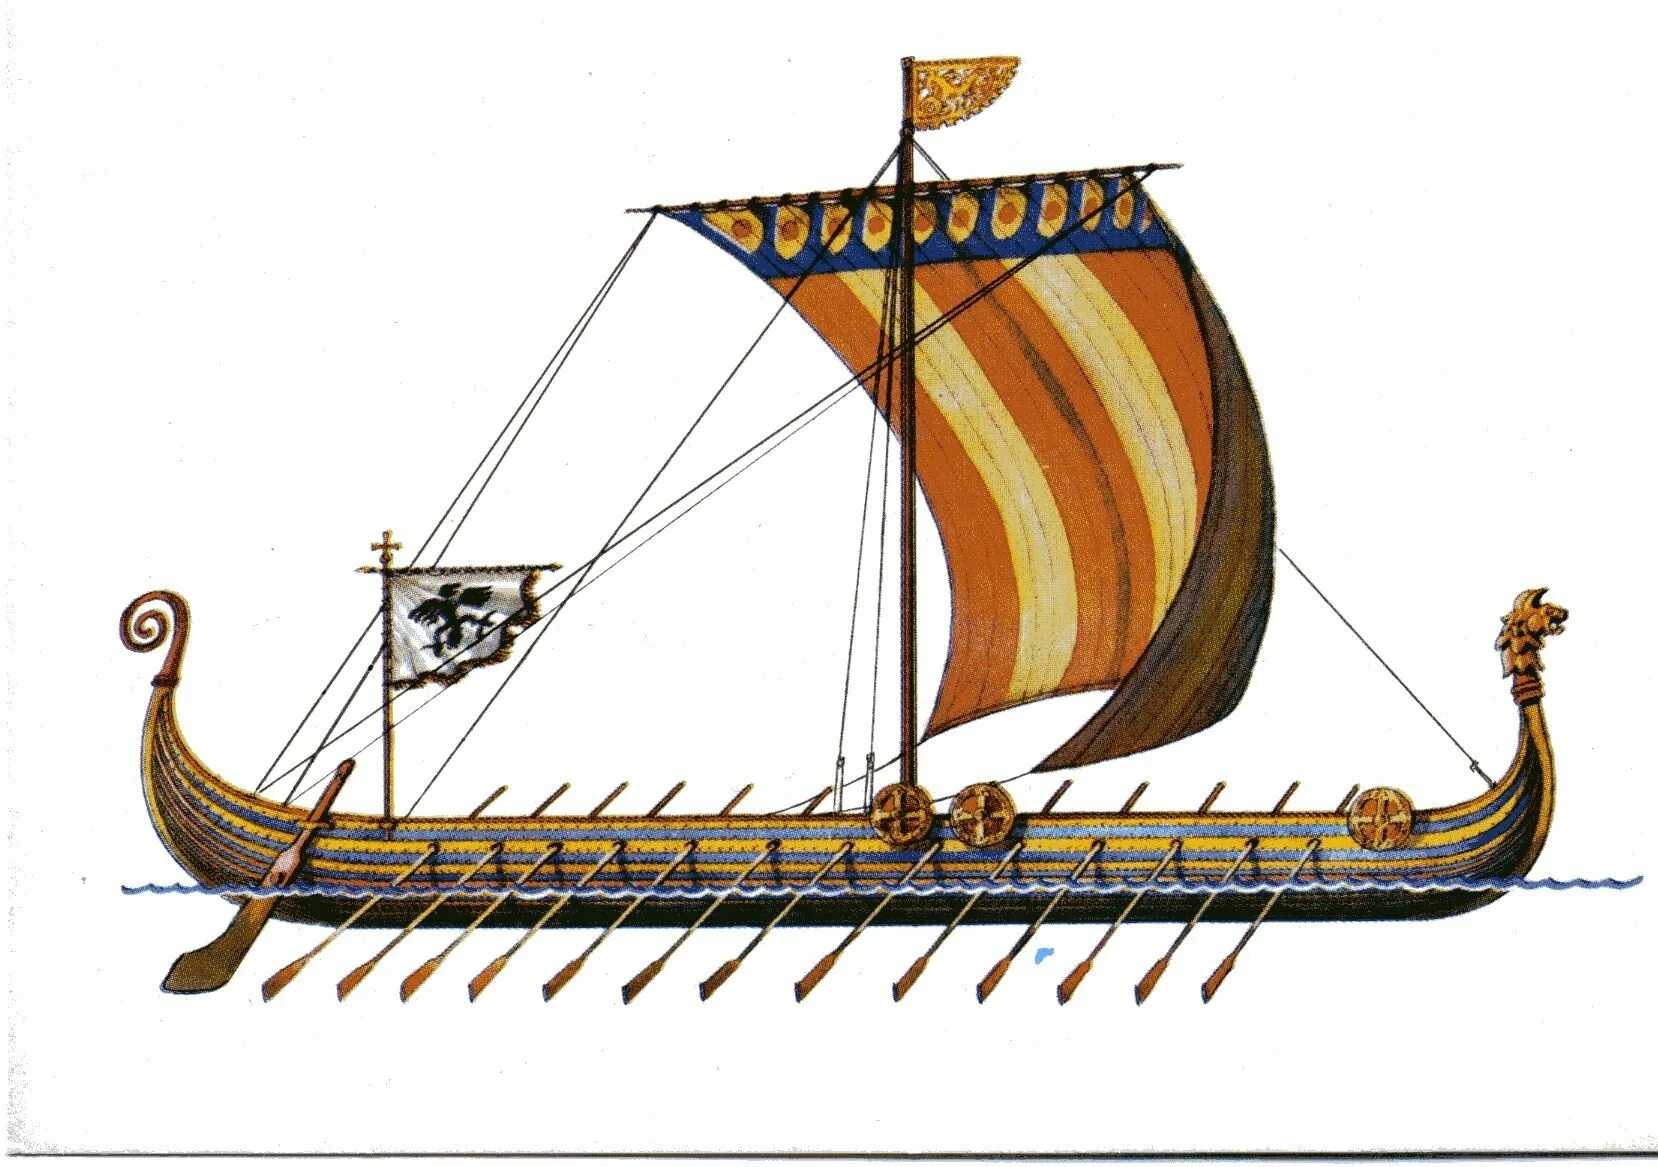 Корабль викингов Drakkar. Ладья викингов дракар. Корабль викингов Драккар 10 век. Корабли Вильгельма завоевателя. Ладья рисунок